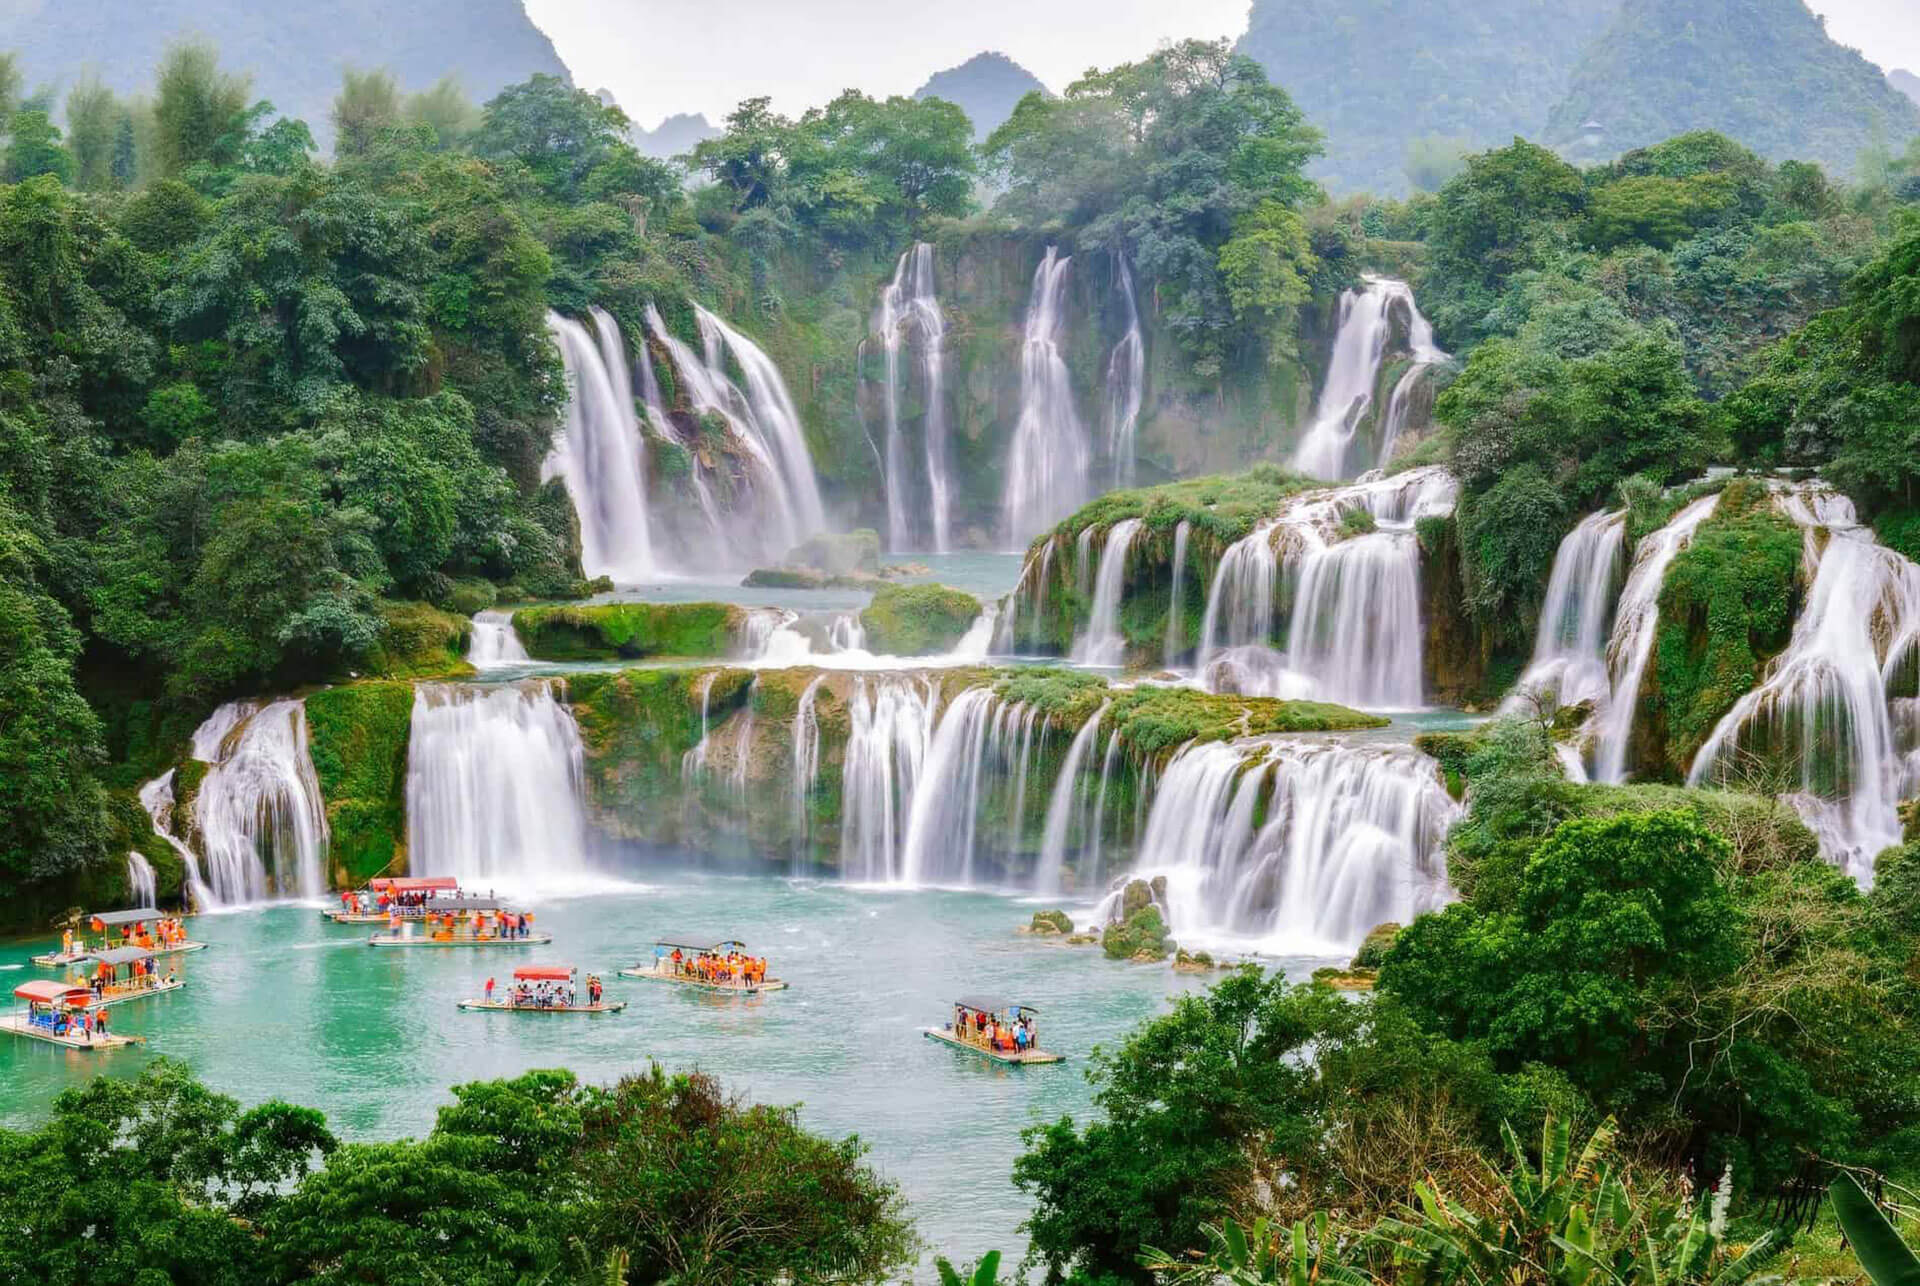 Ban Gioc Waterfalls | A natural wonder by the border